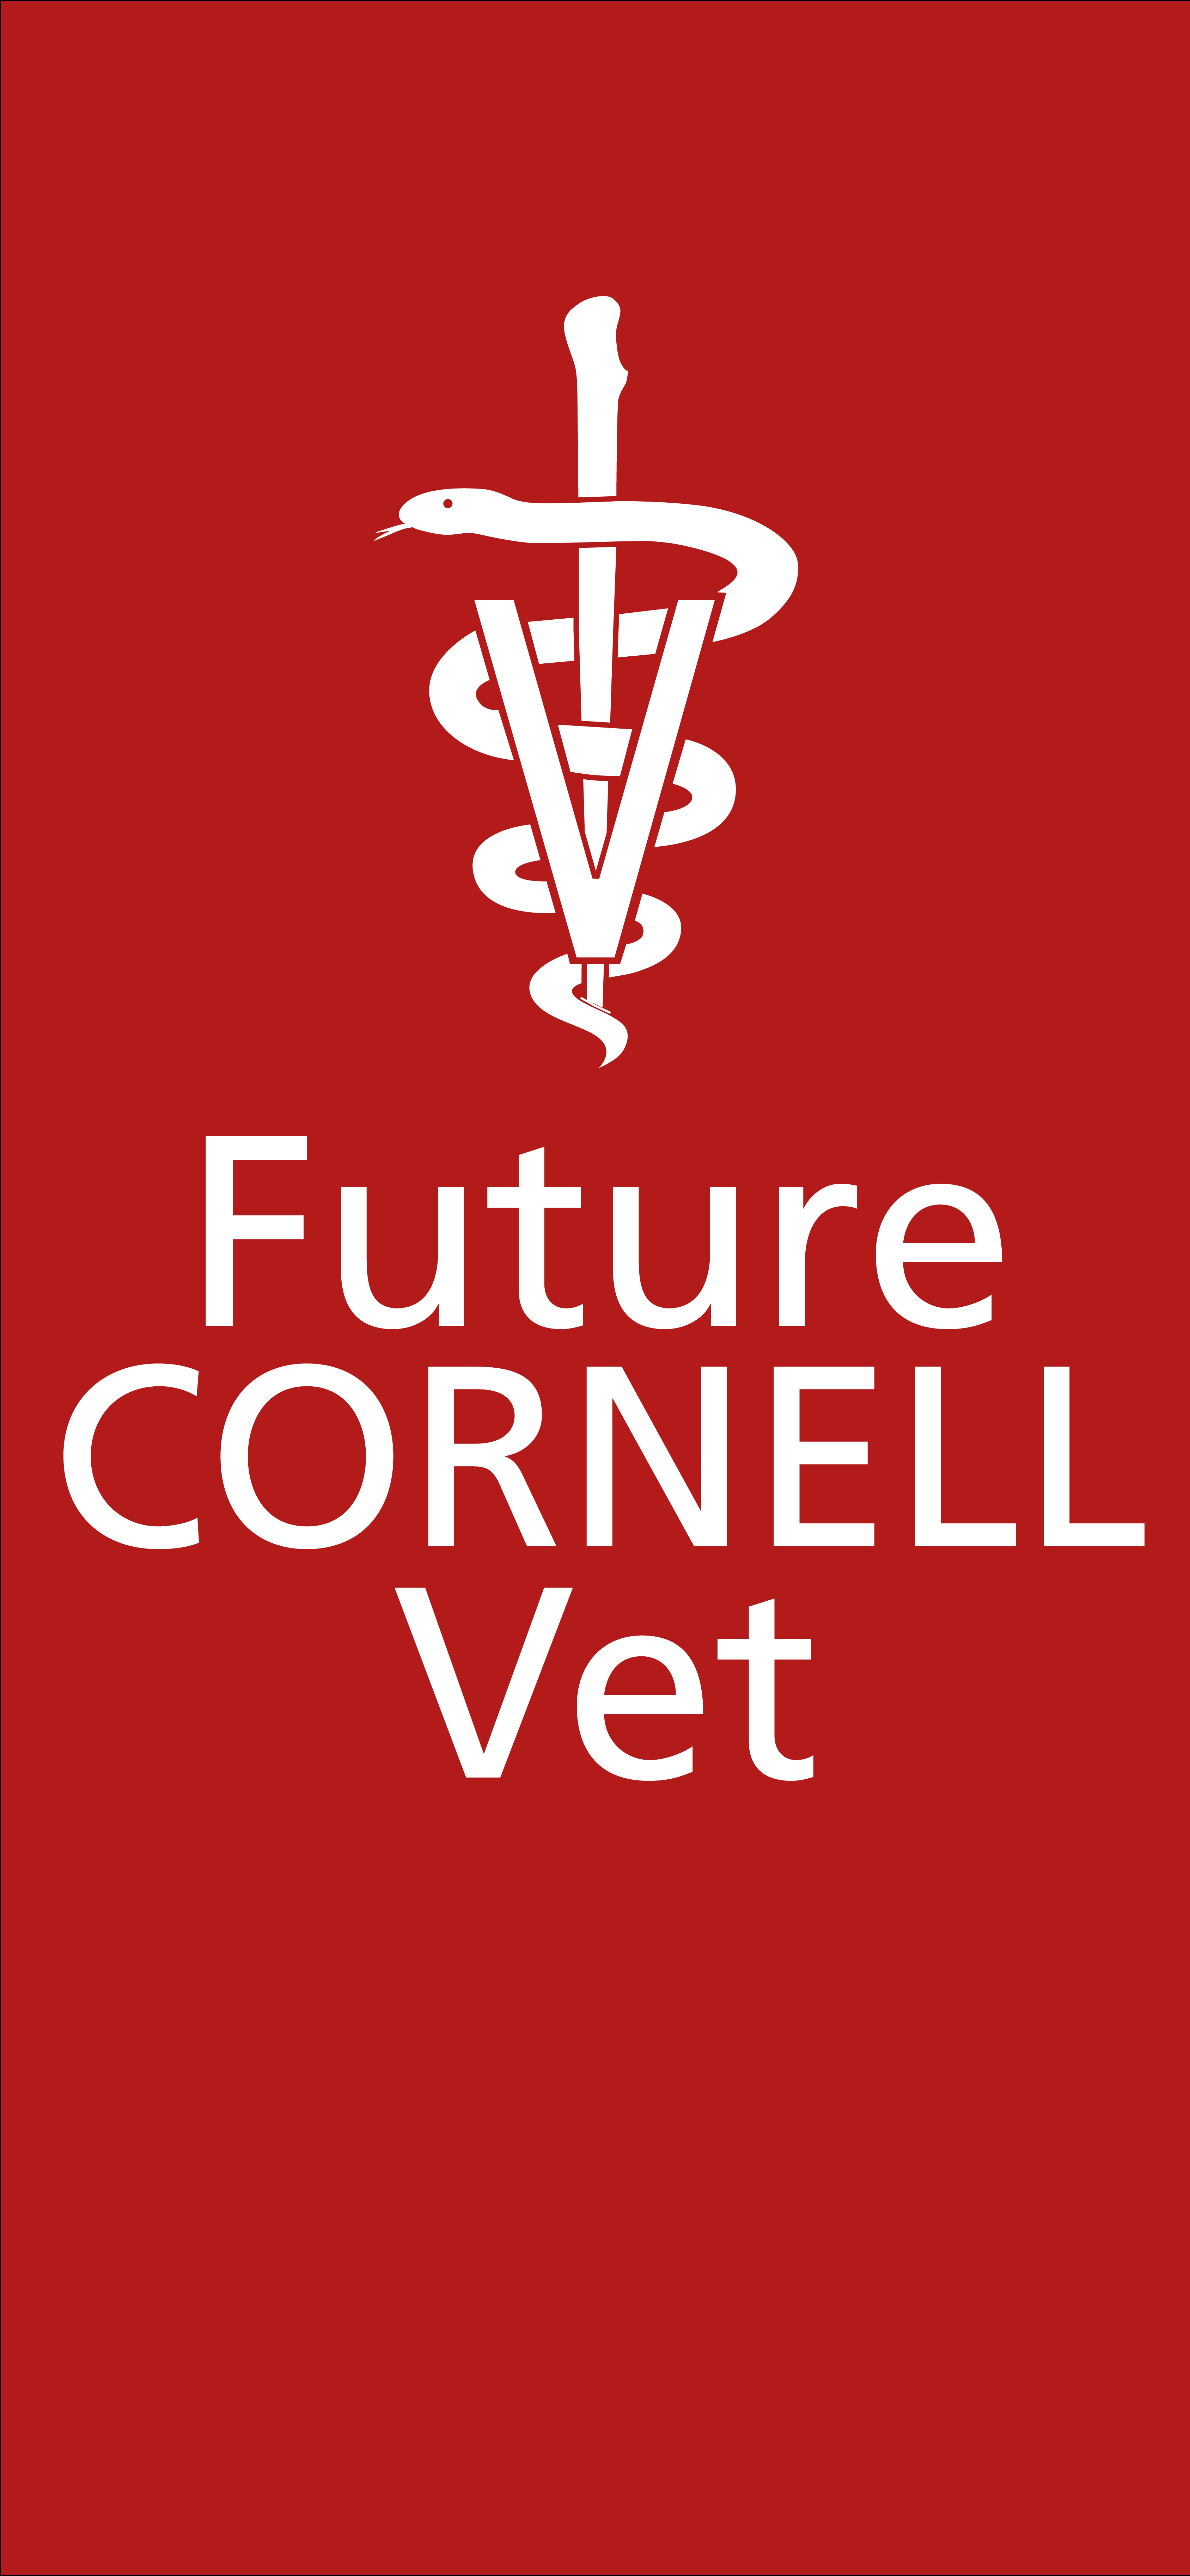 Future Vet Wallpaper. Cornell University College of Veterinary Medicine